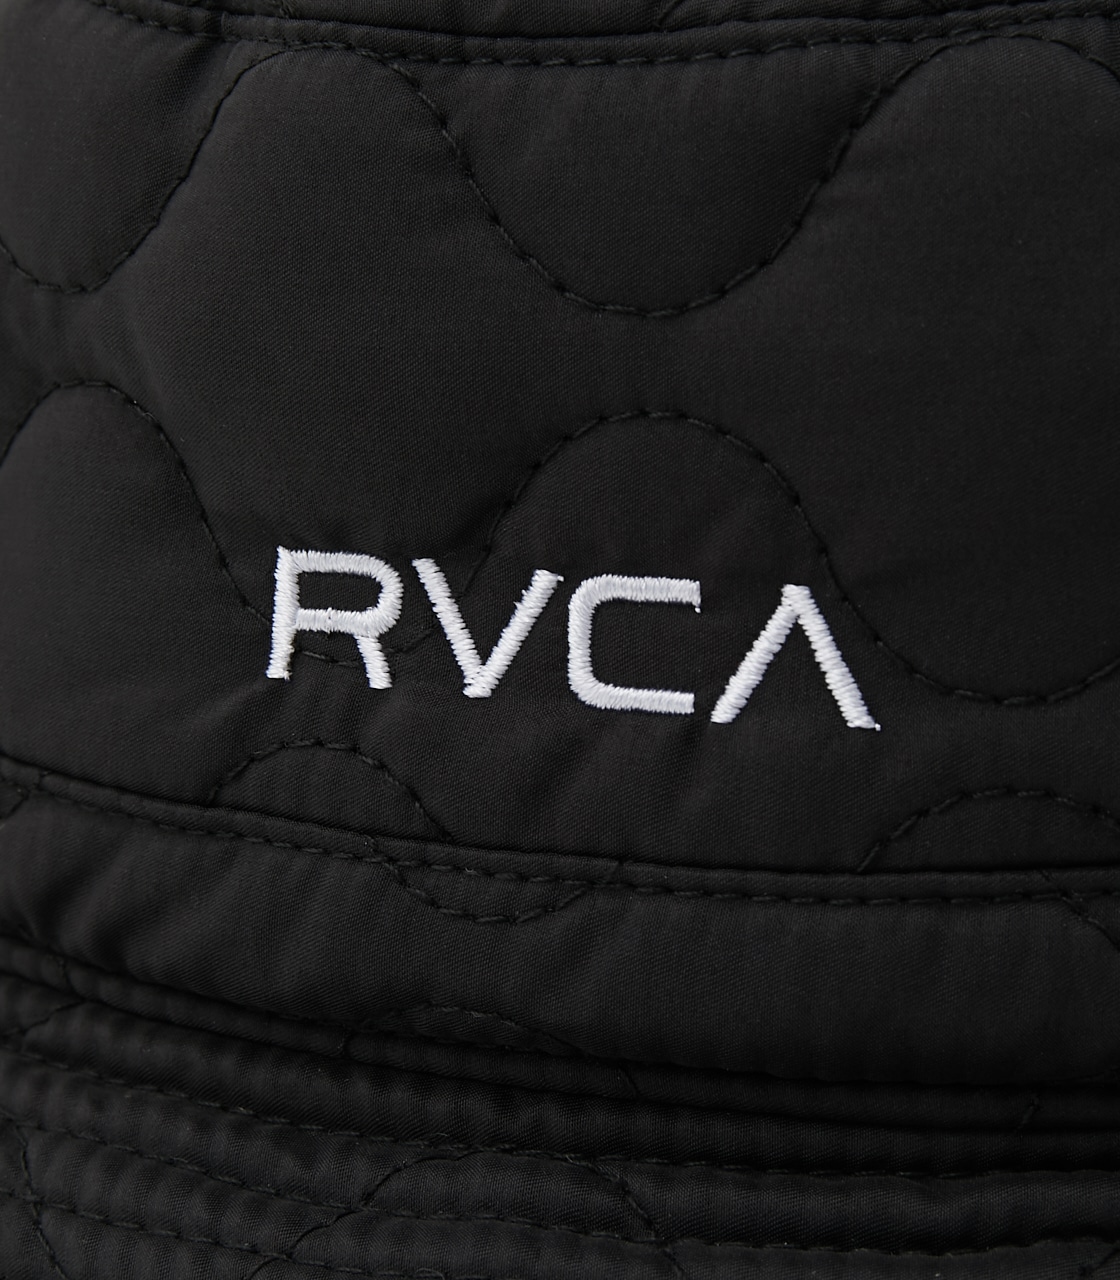 RVCA QUILTING RVCA HAT/RVCAキルティングRVCAハット